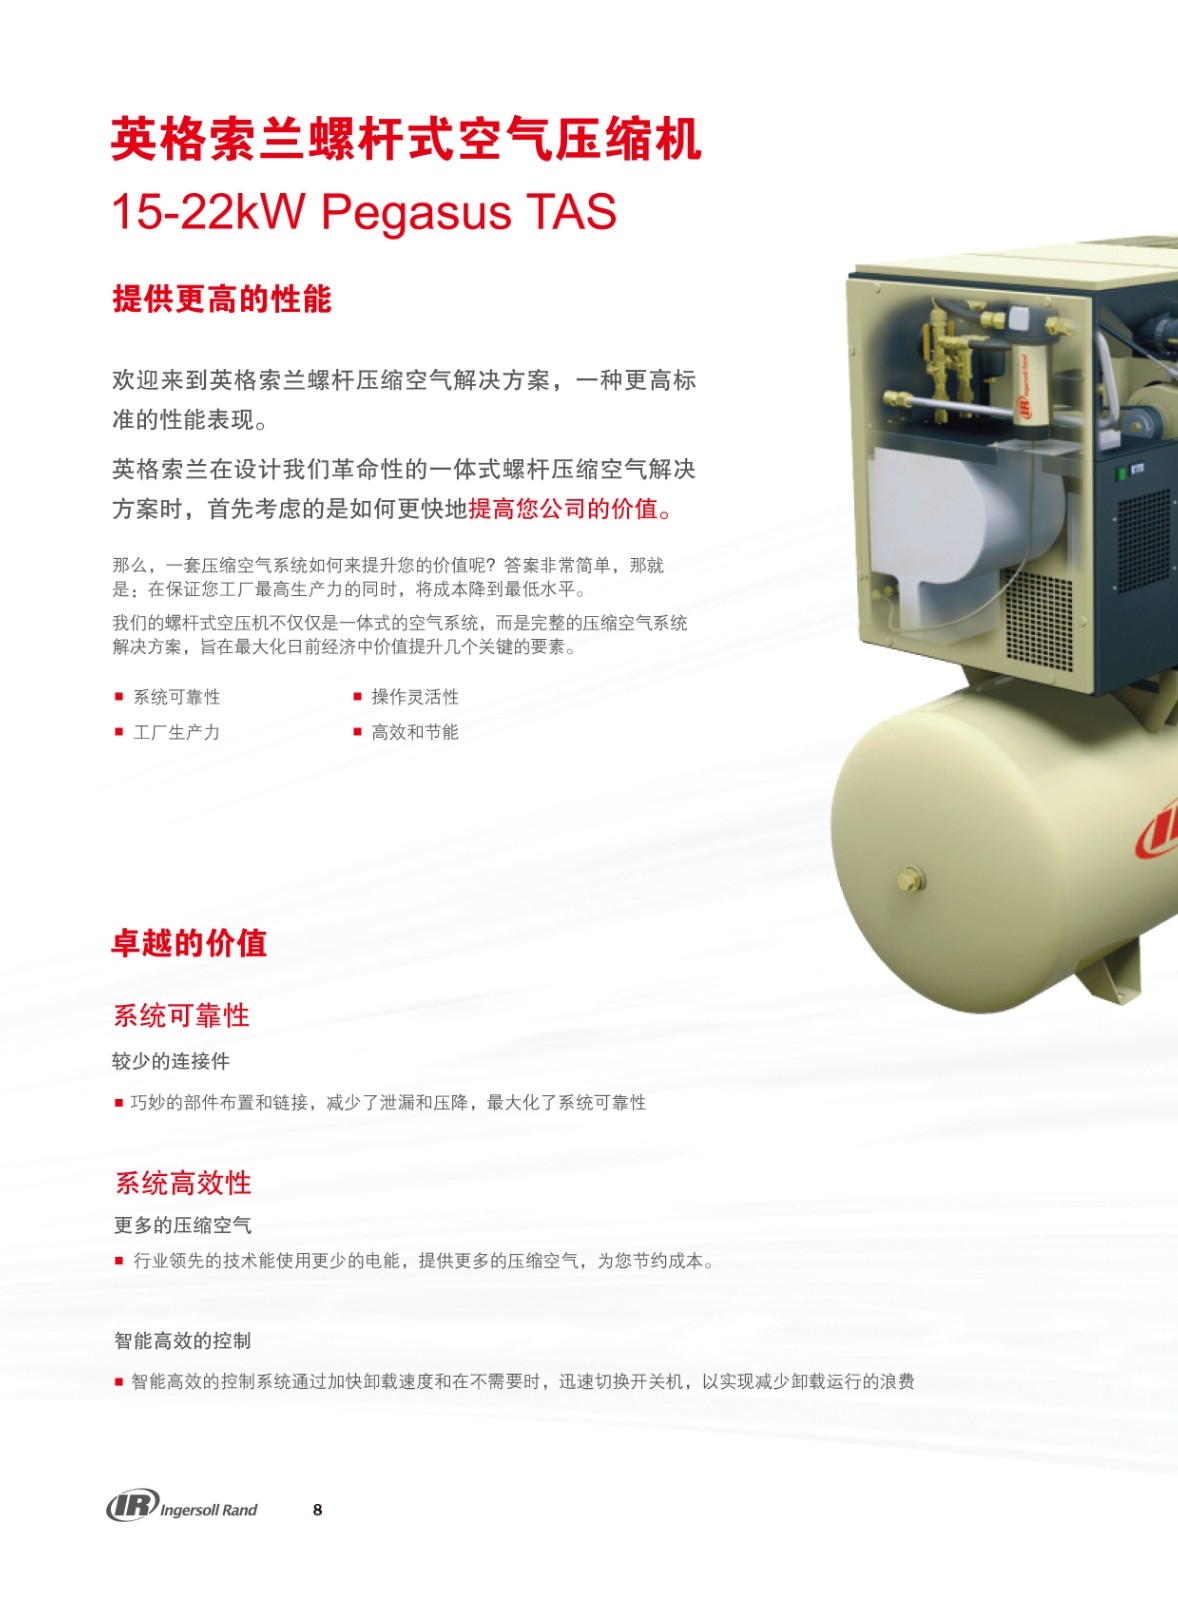 UP系列微油螺杆式空气压缩机15-22KW